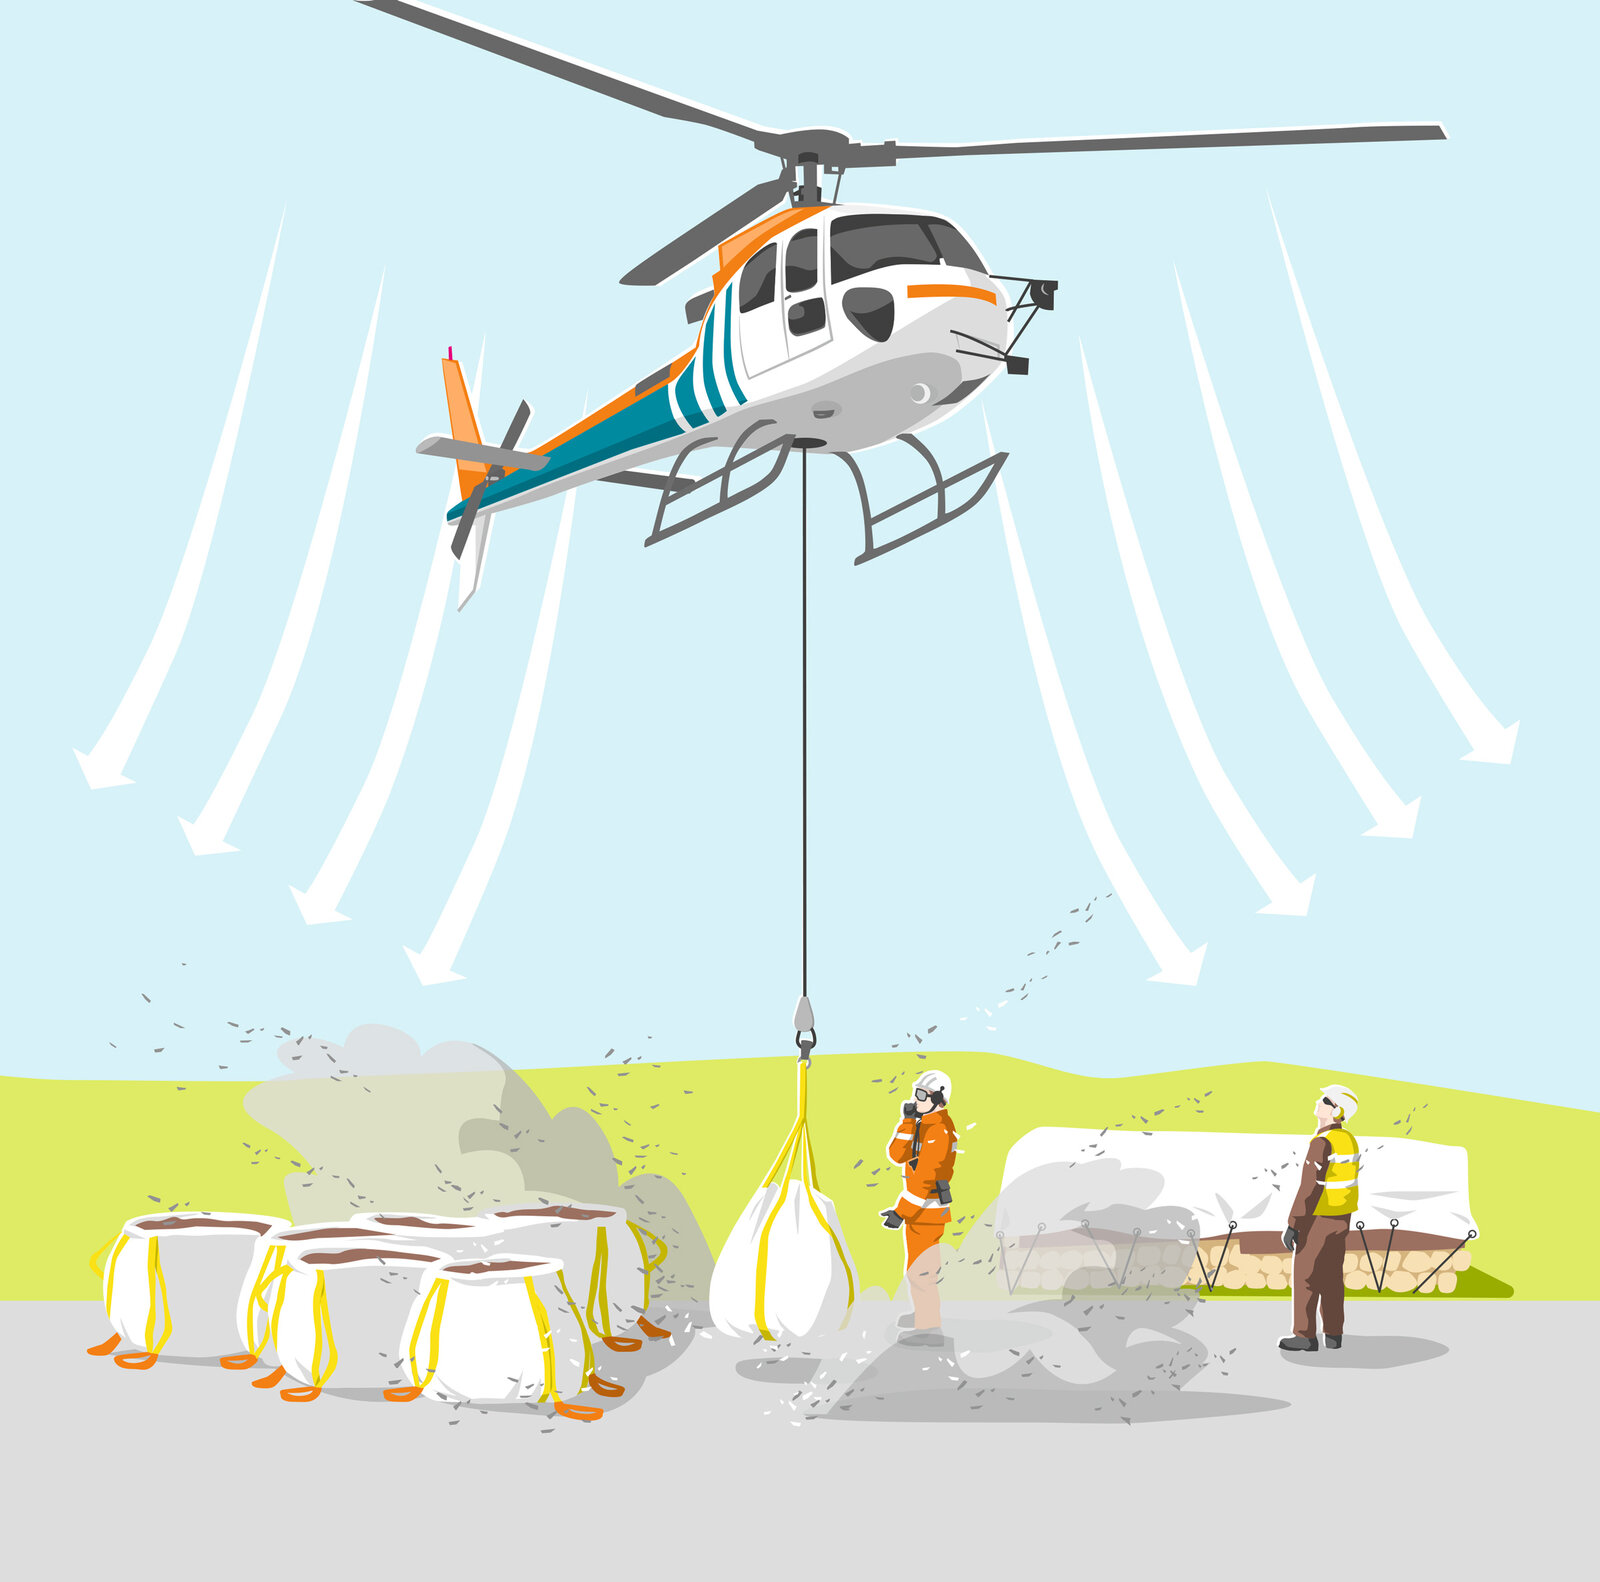 oculus-illustration-suva-helikopter-bodenpersonal-manual-landeflug